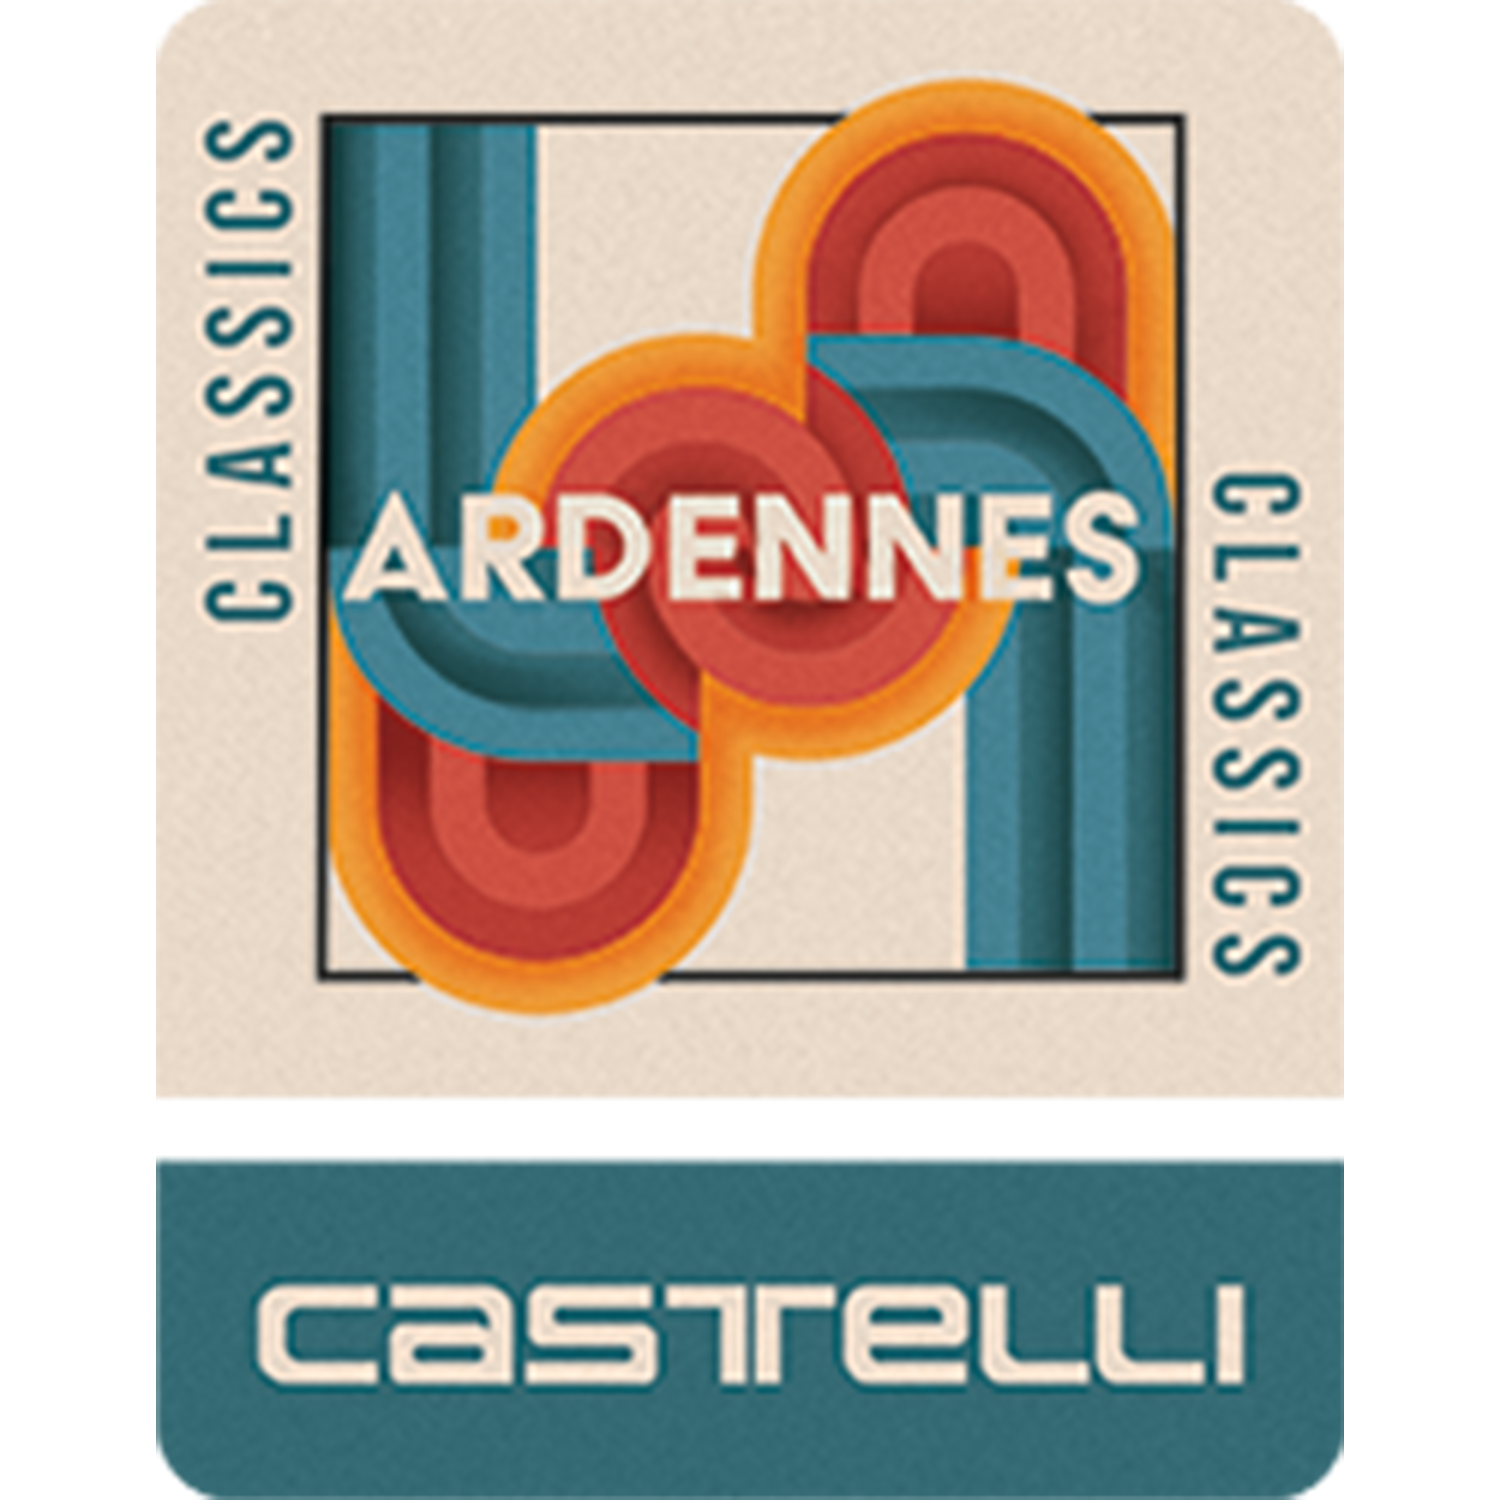 Castelli Ardennes Challenge